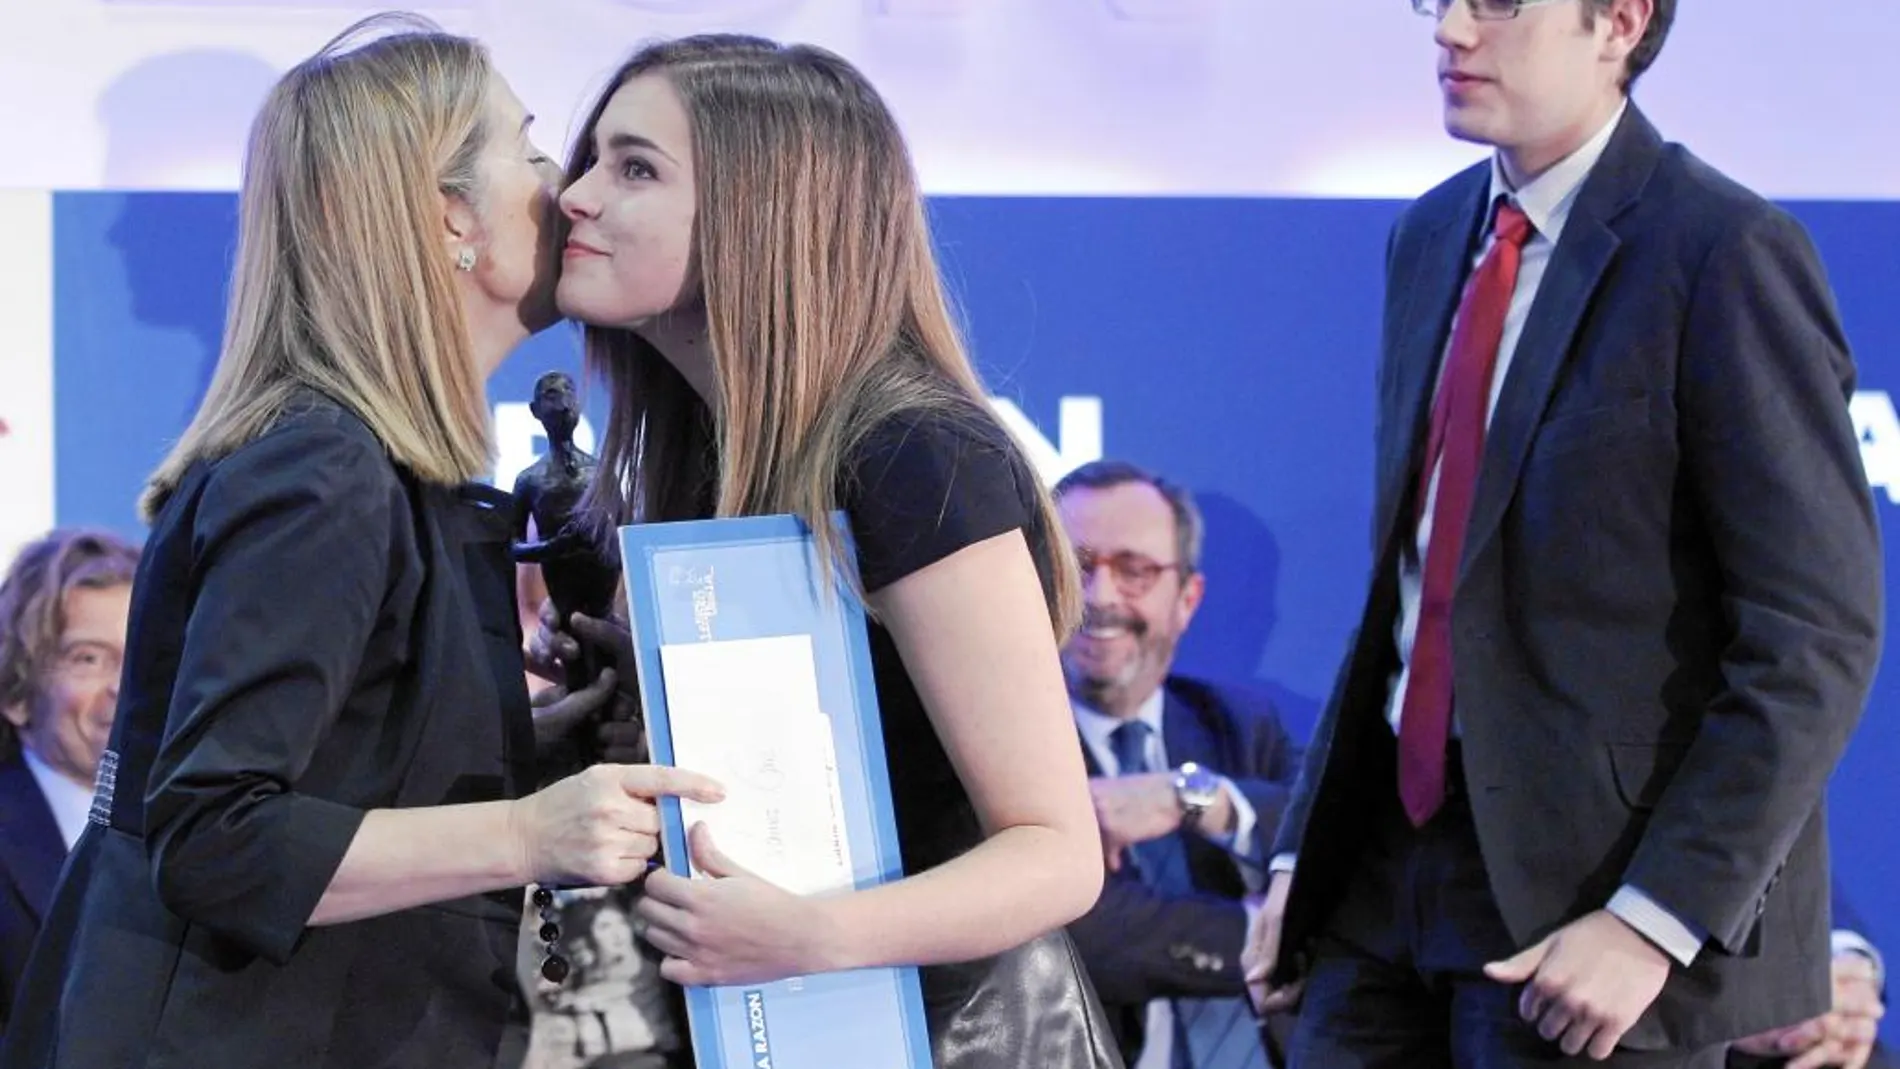 Óscar Rivero Salga y Laura Cue López recibiendo el Premio Alfonso Ussía al Mejor Estudiante del Año